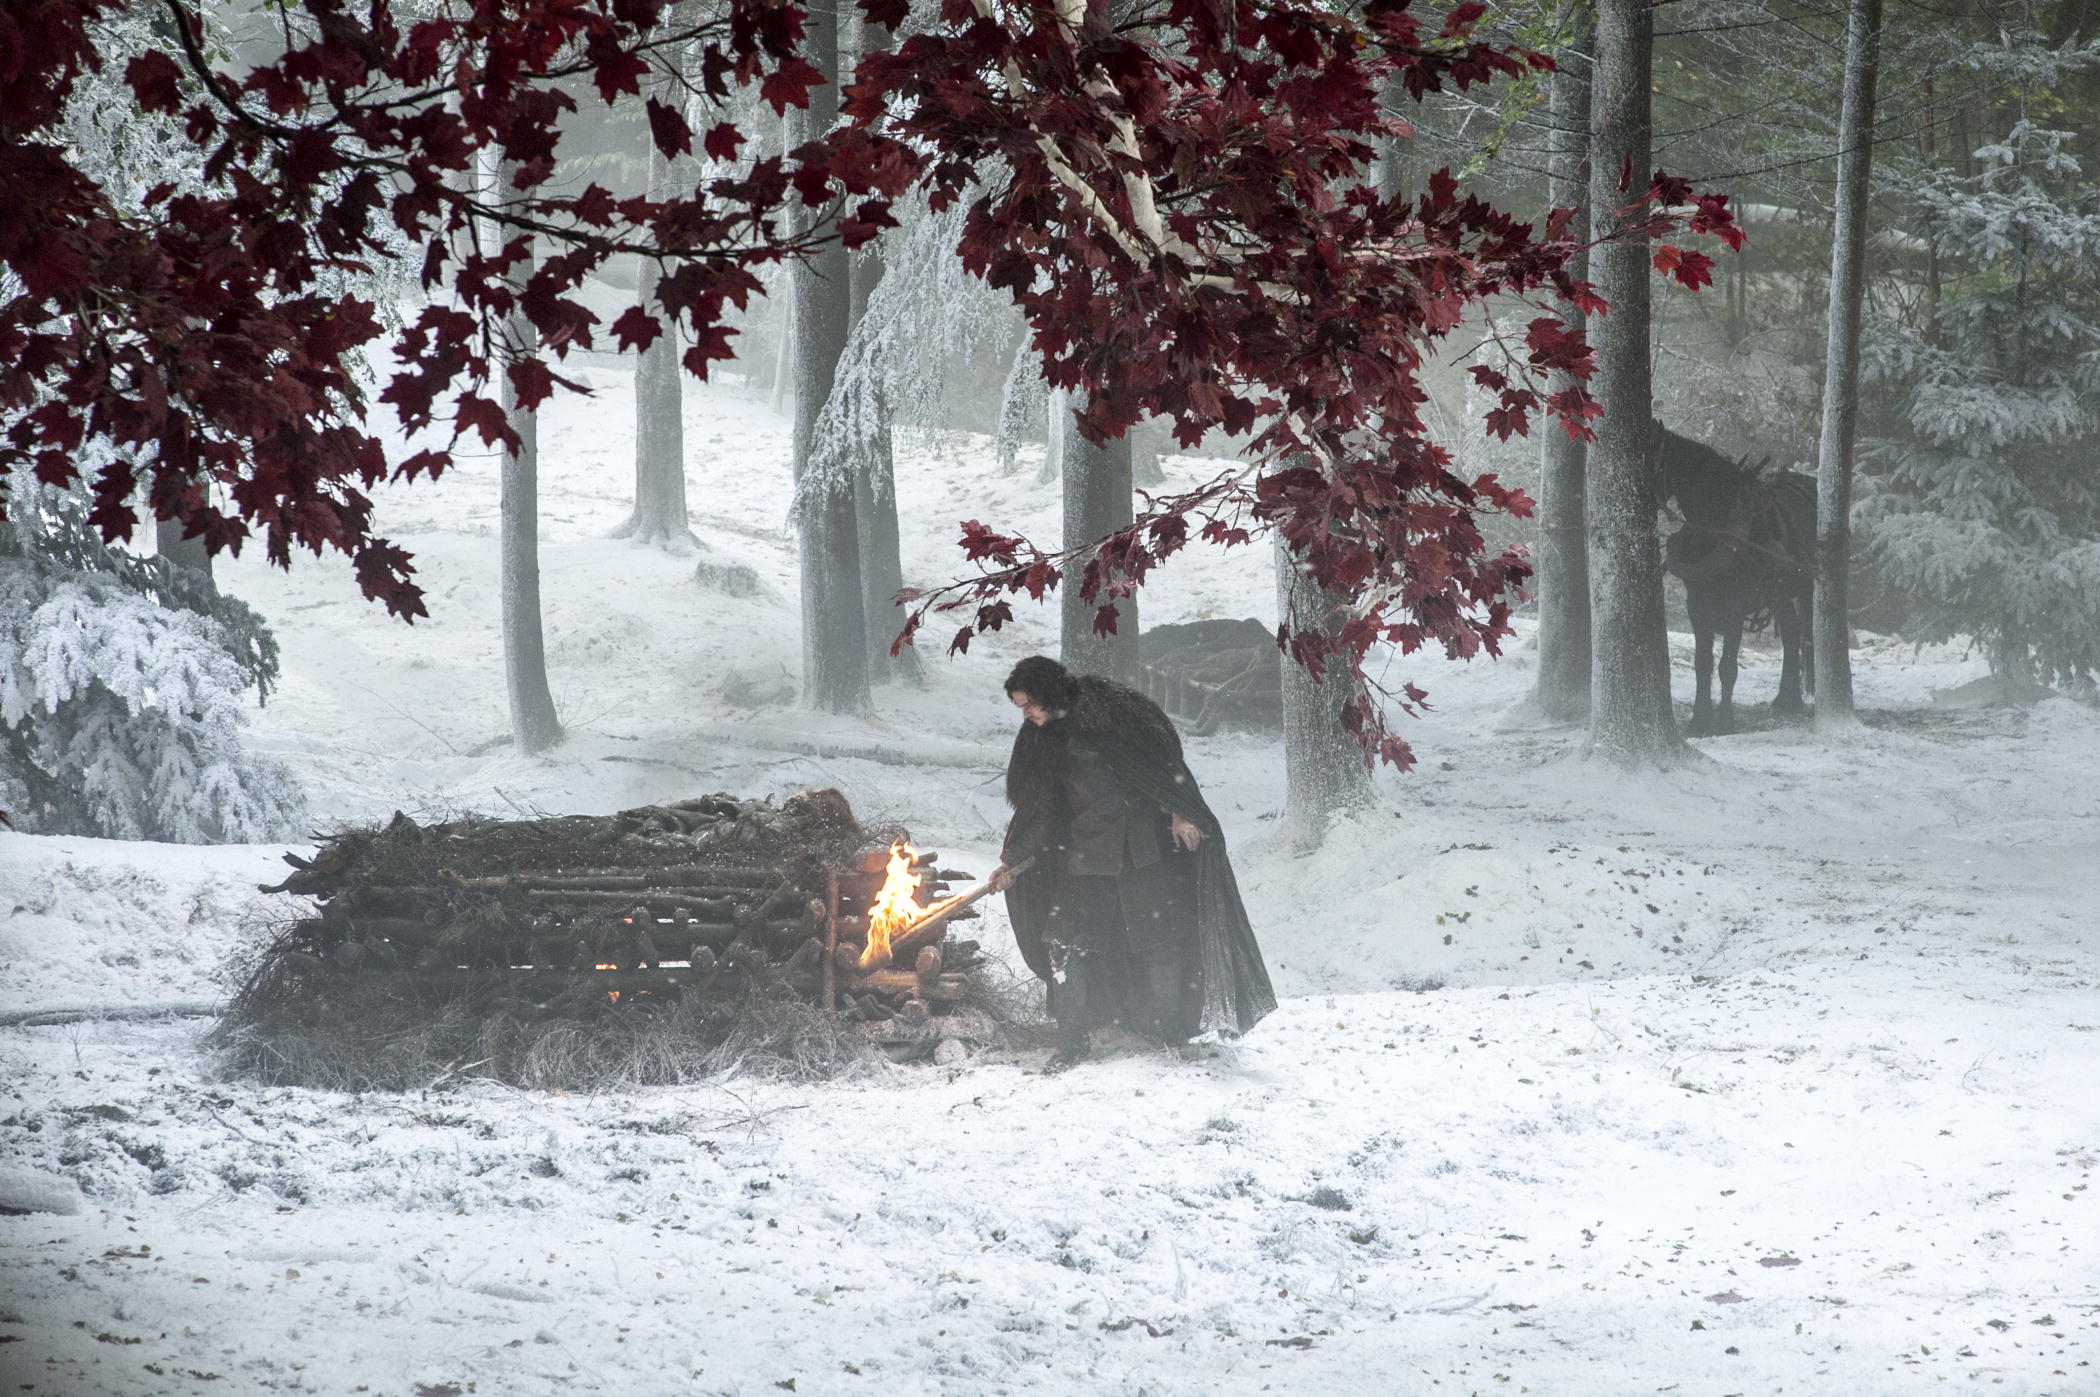 Jon Snow (Kit Harrington) in Season 4 of "Game of Thrones"